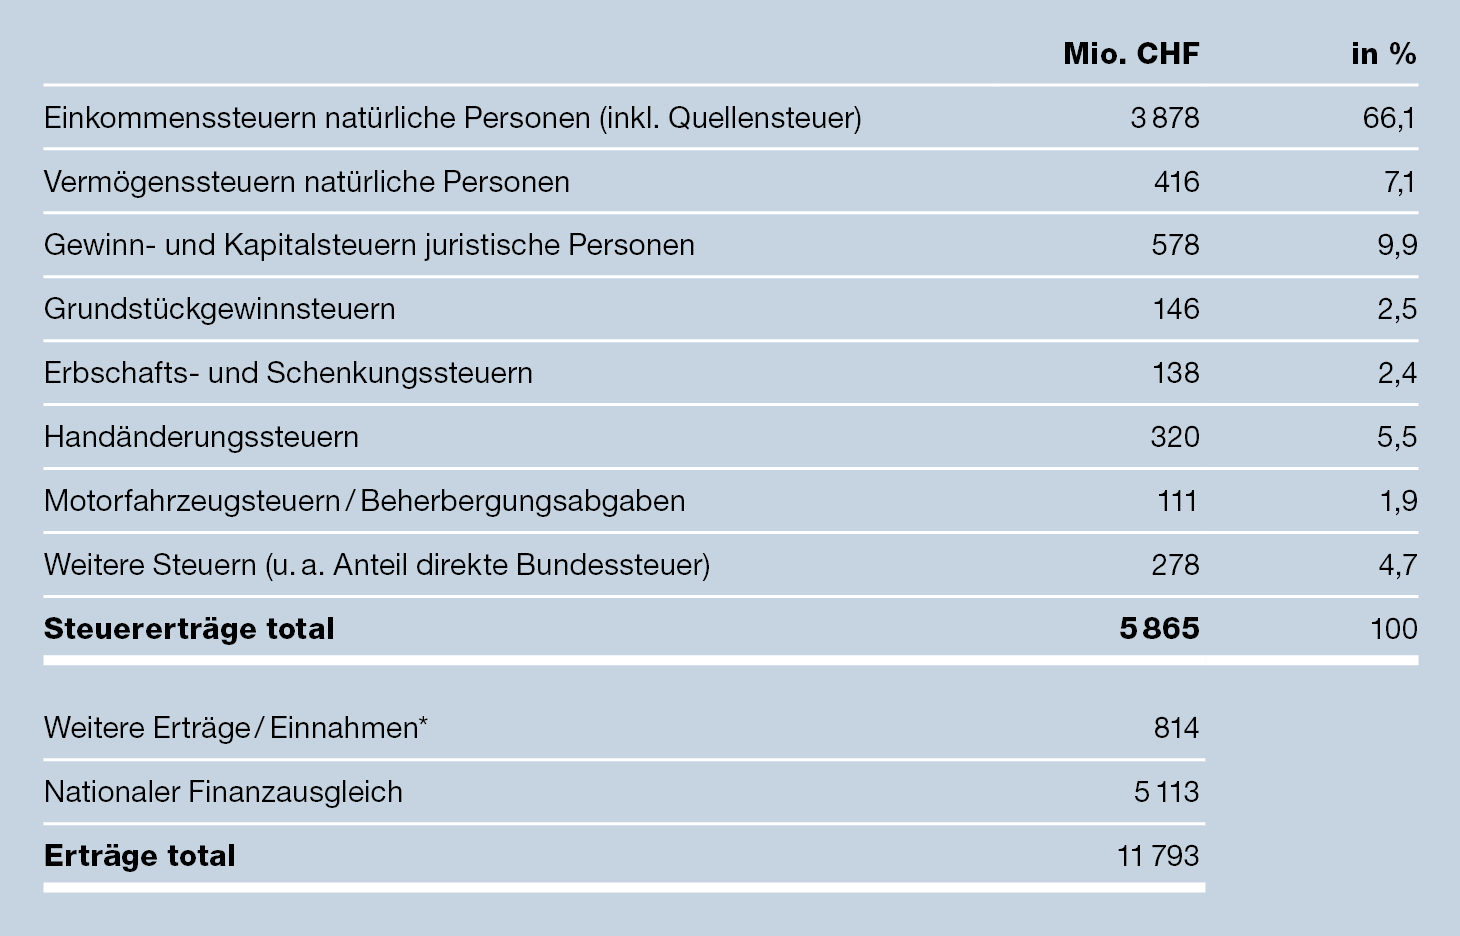 Steuererträge der verschiedenen Steuerarten, Total 5847 in Mio CHF.